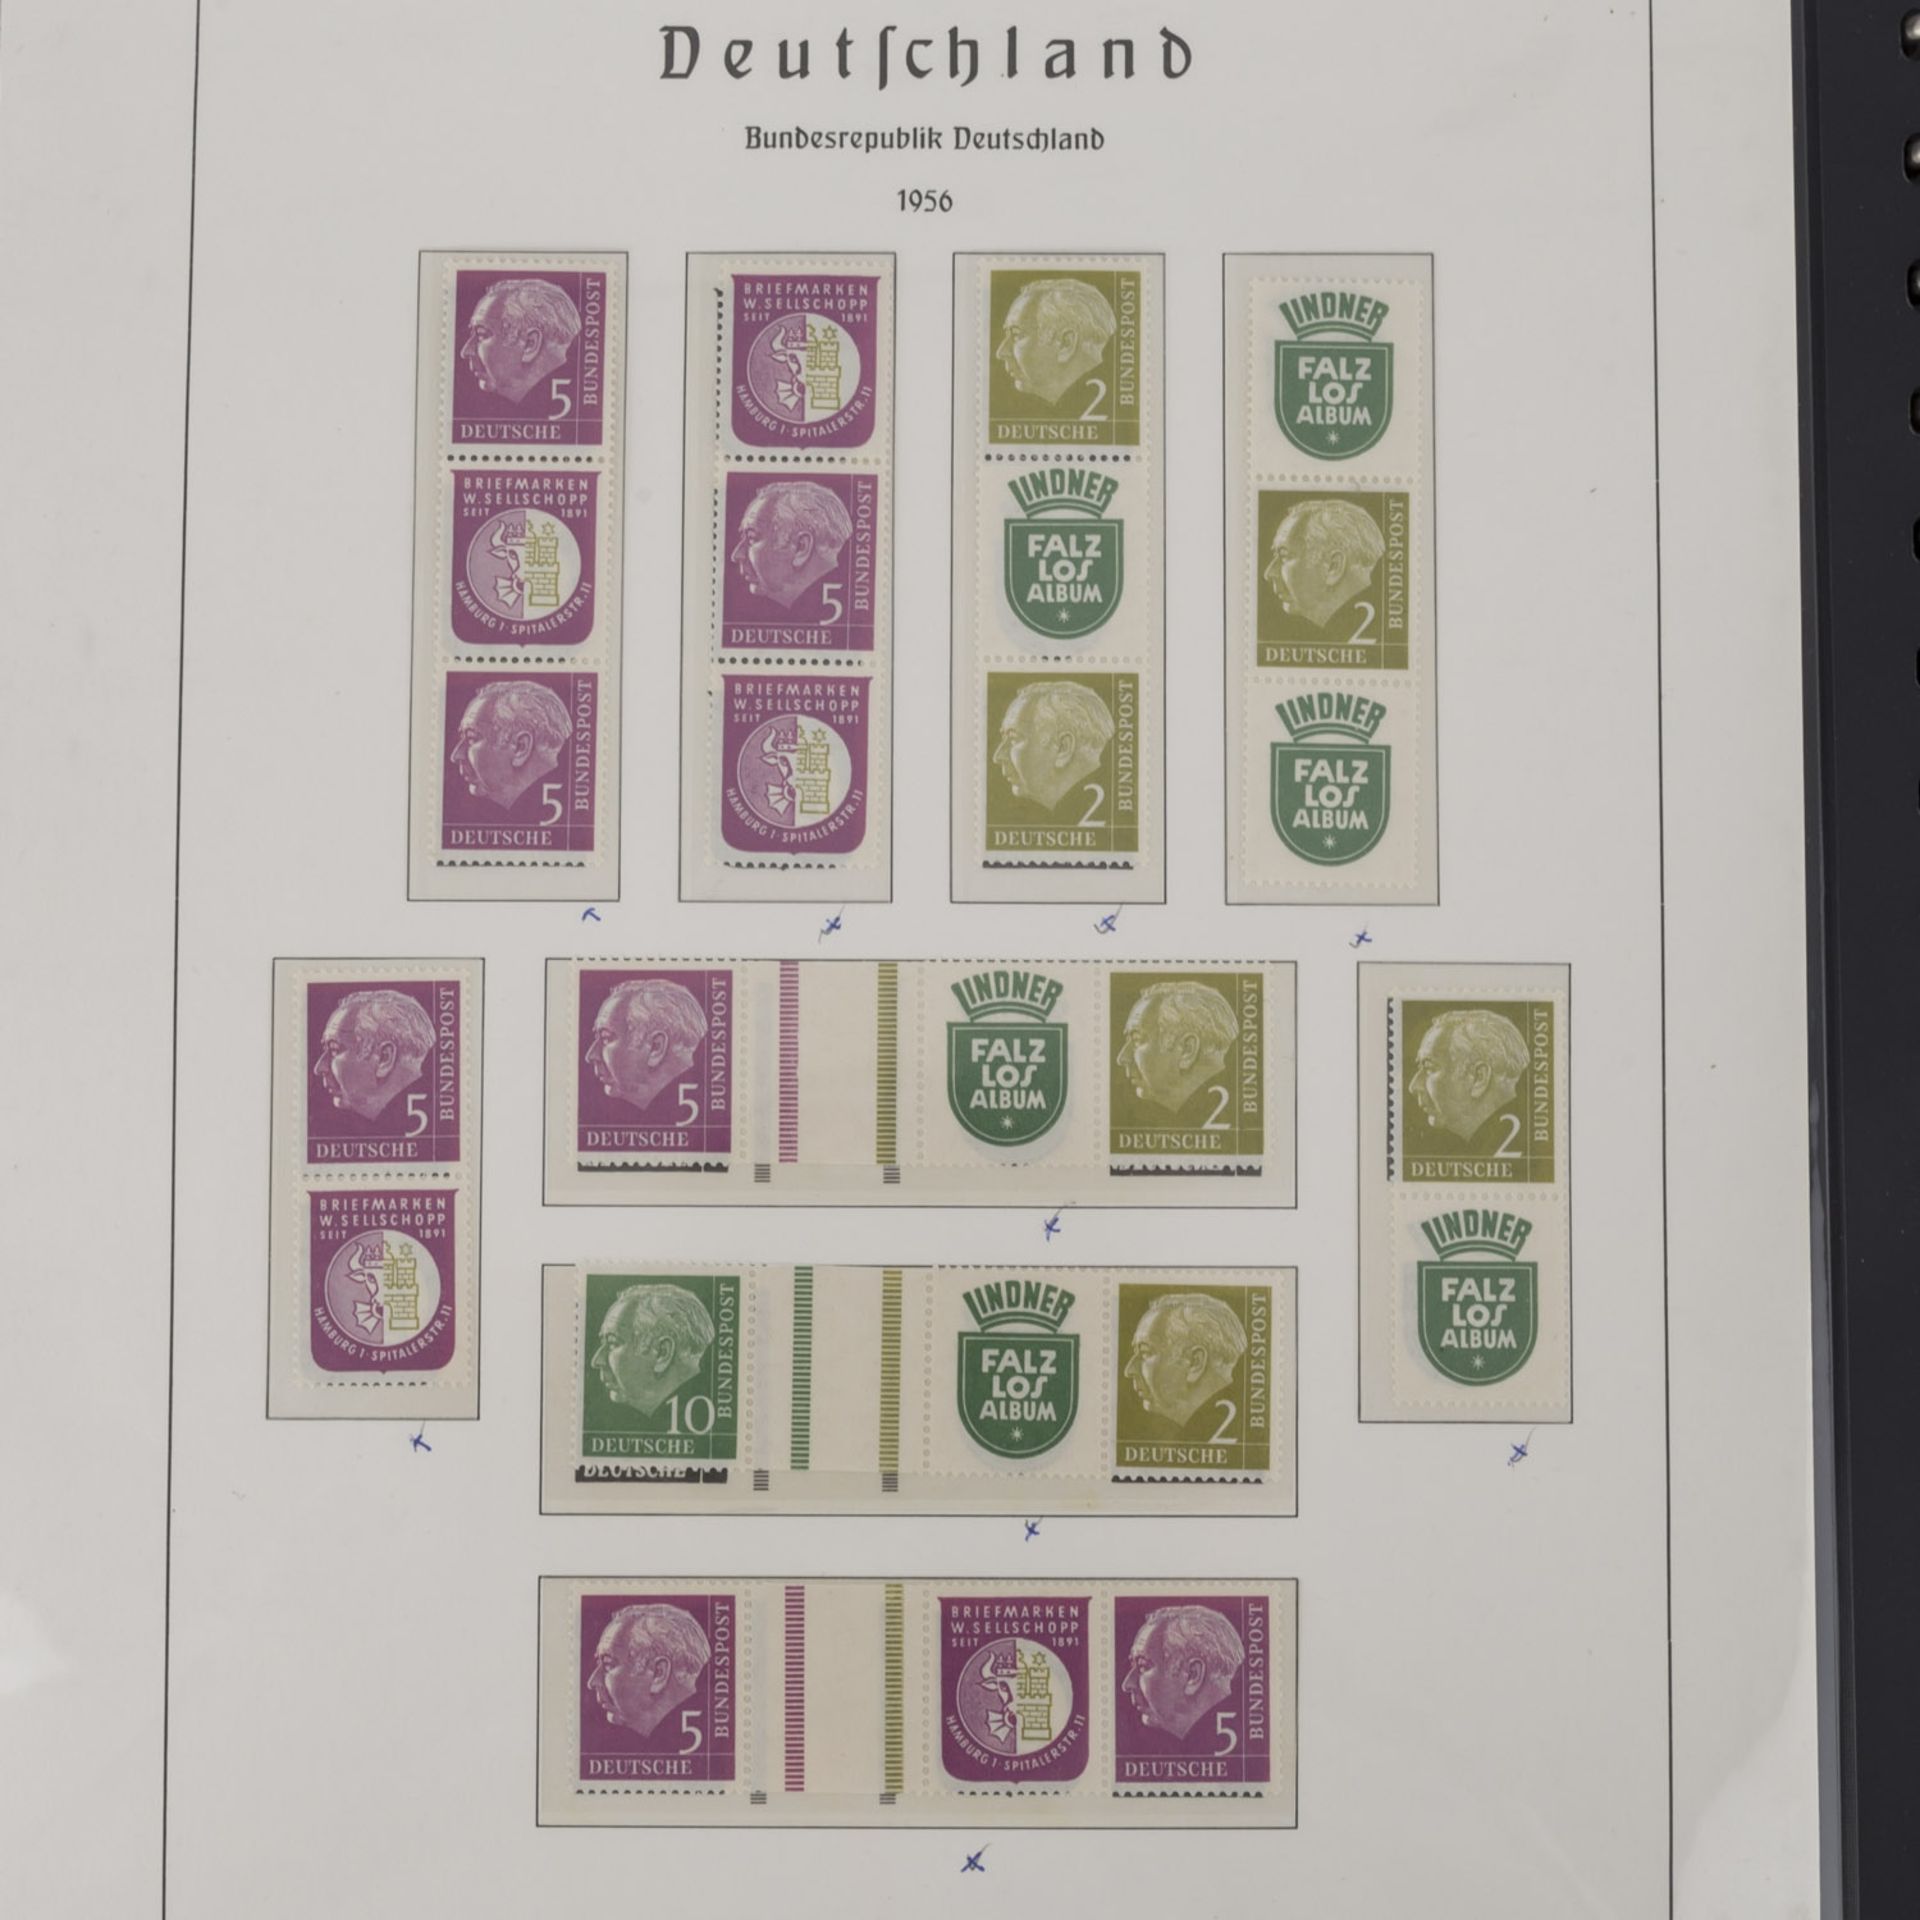 Deutschland Zusammendrucke - Steckbuch ab Dt. Reich Germania,auch frühe Bund (Posthorn), Berlin. - Bild 3 aus 6